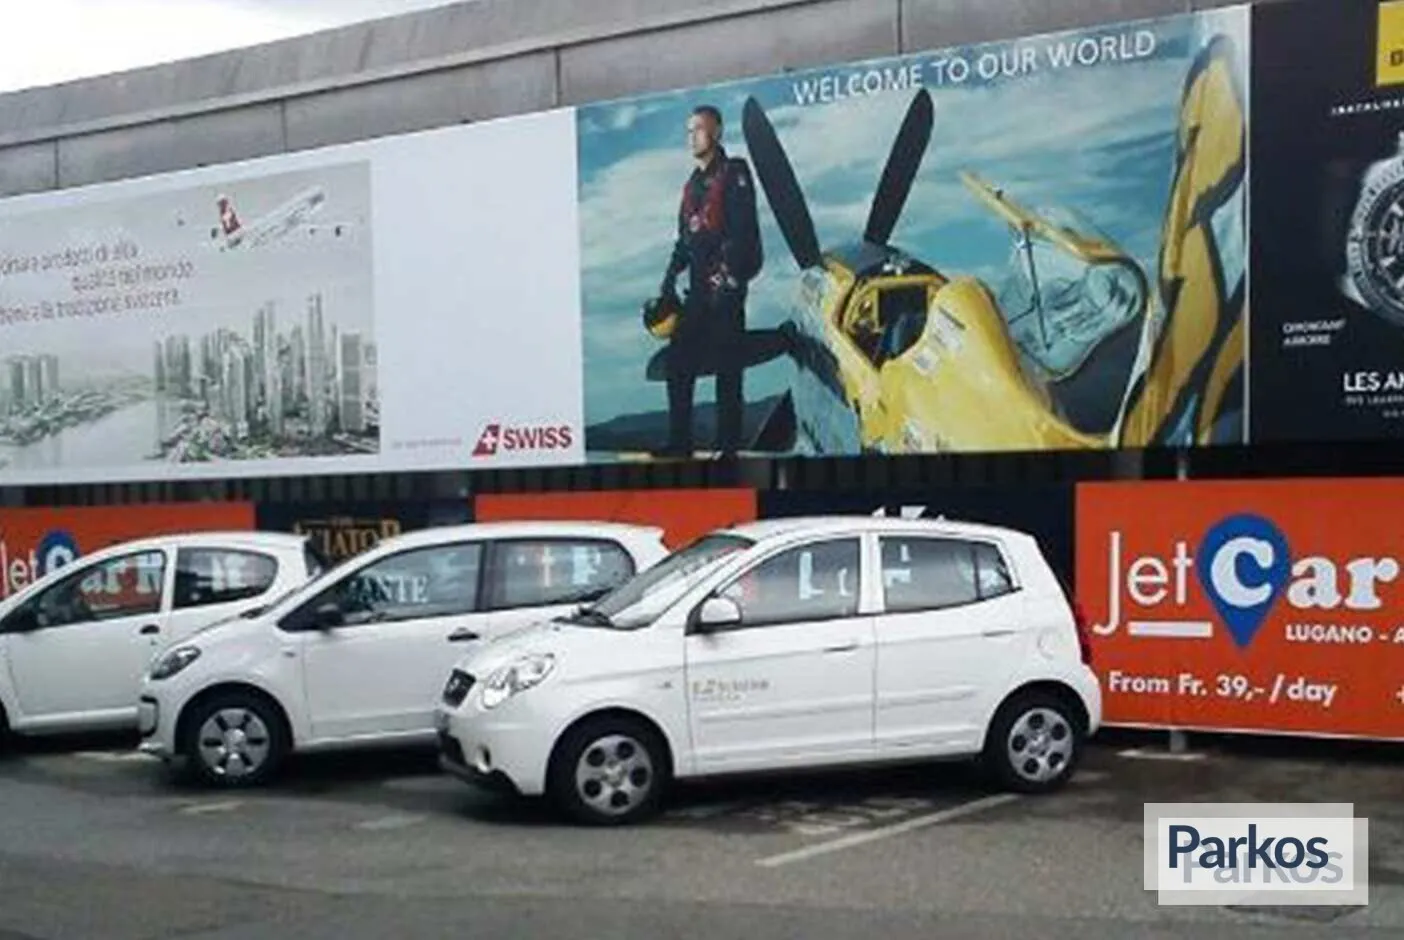 JetCarPark - Parken Flughafen Lugano - picture 1